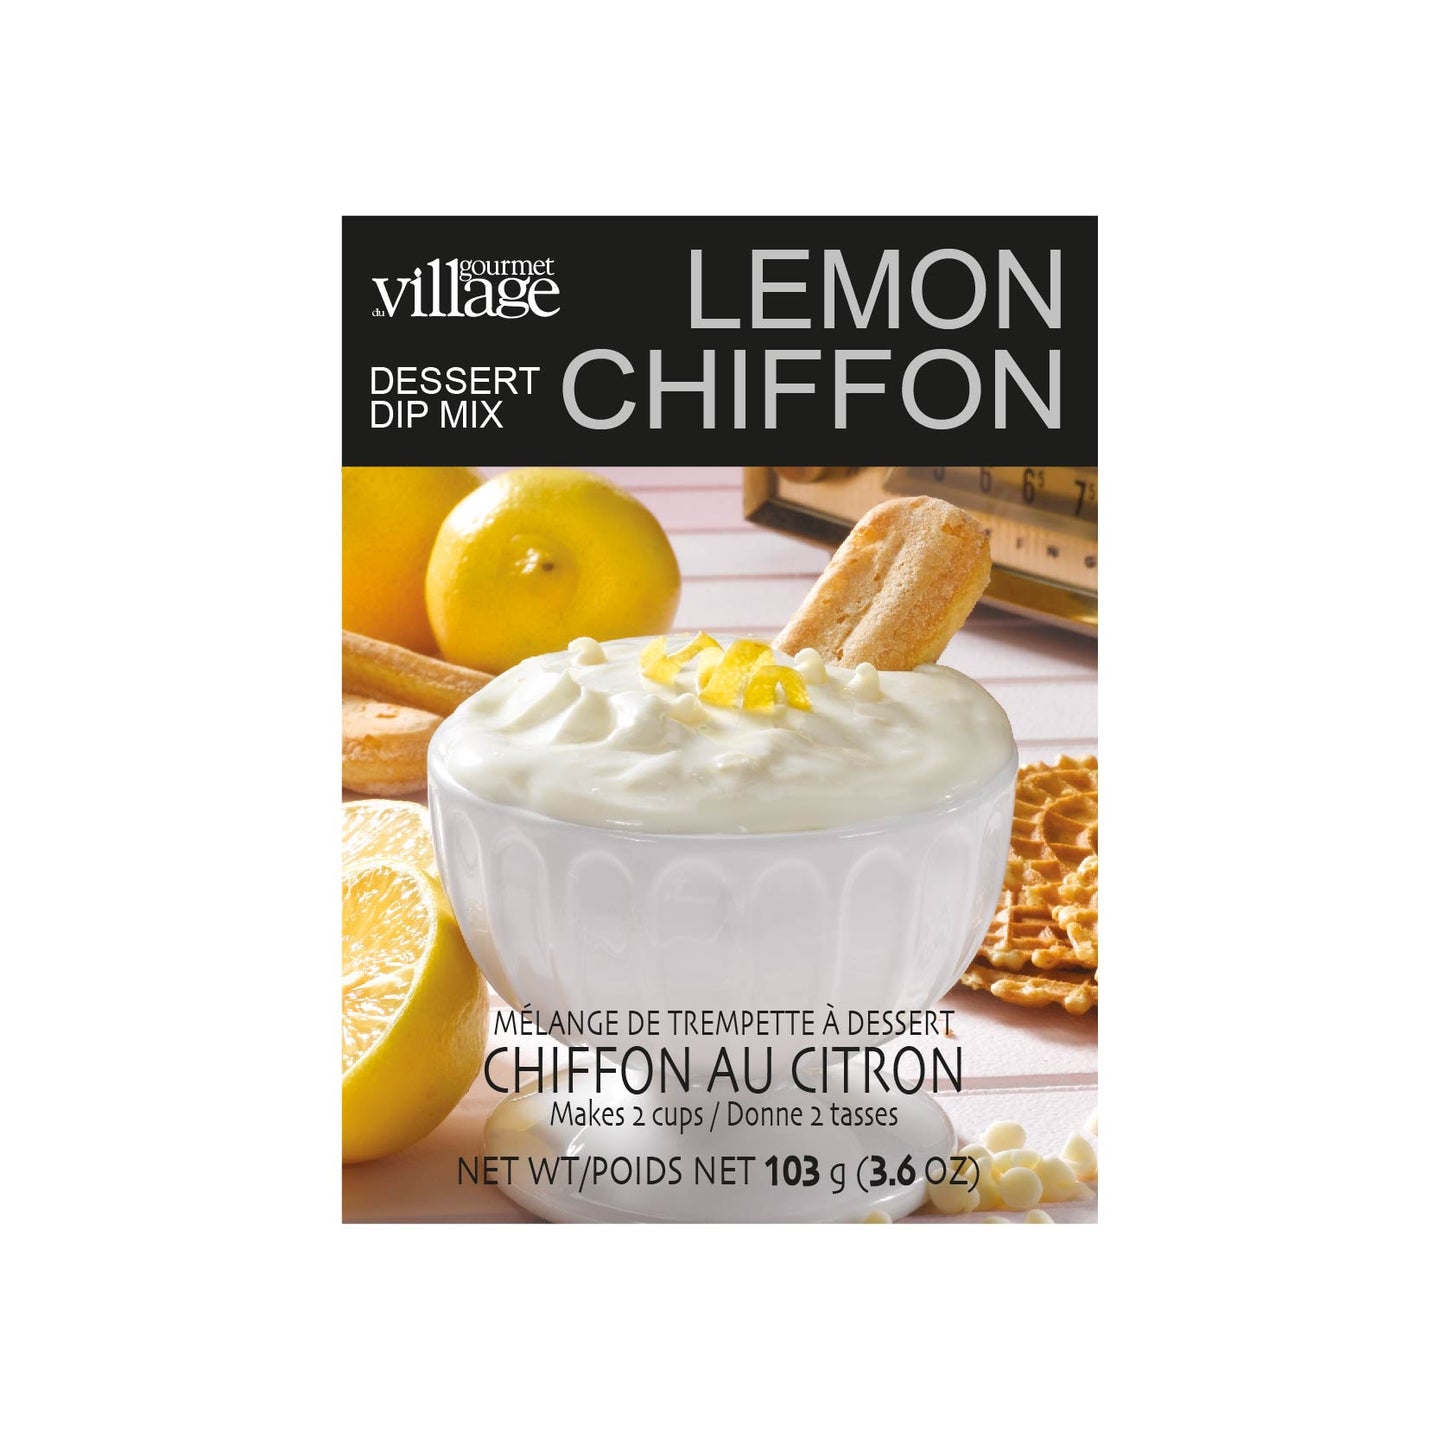 Lemon Chiffon Dip Mix